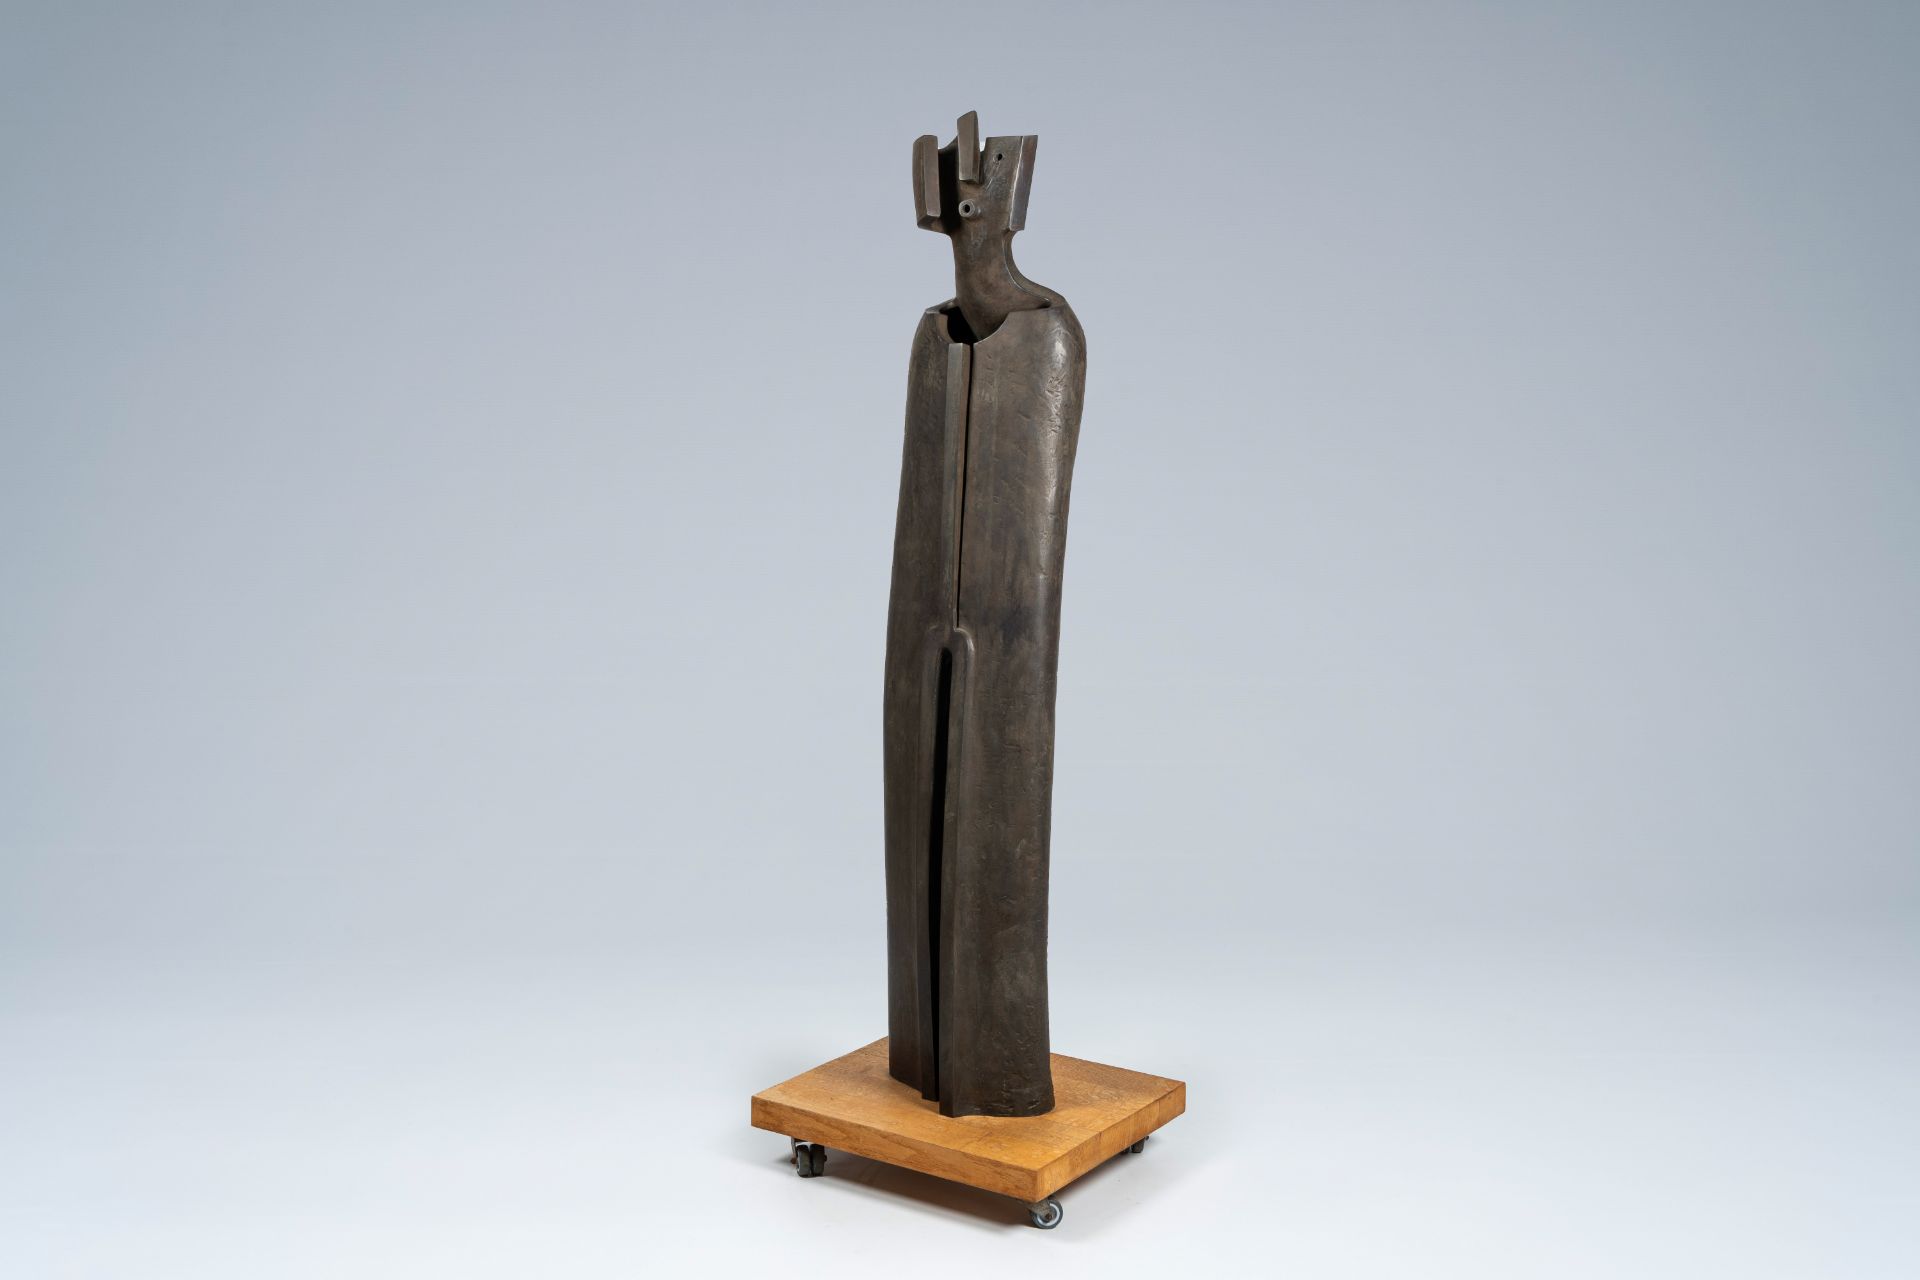 Jacques Tenenhaus (1947): 'The walking man', steel patinated bronze, foundry Landowski, ed. 1/8, dat